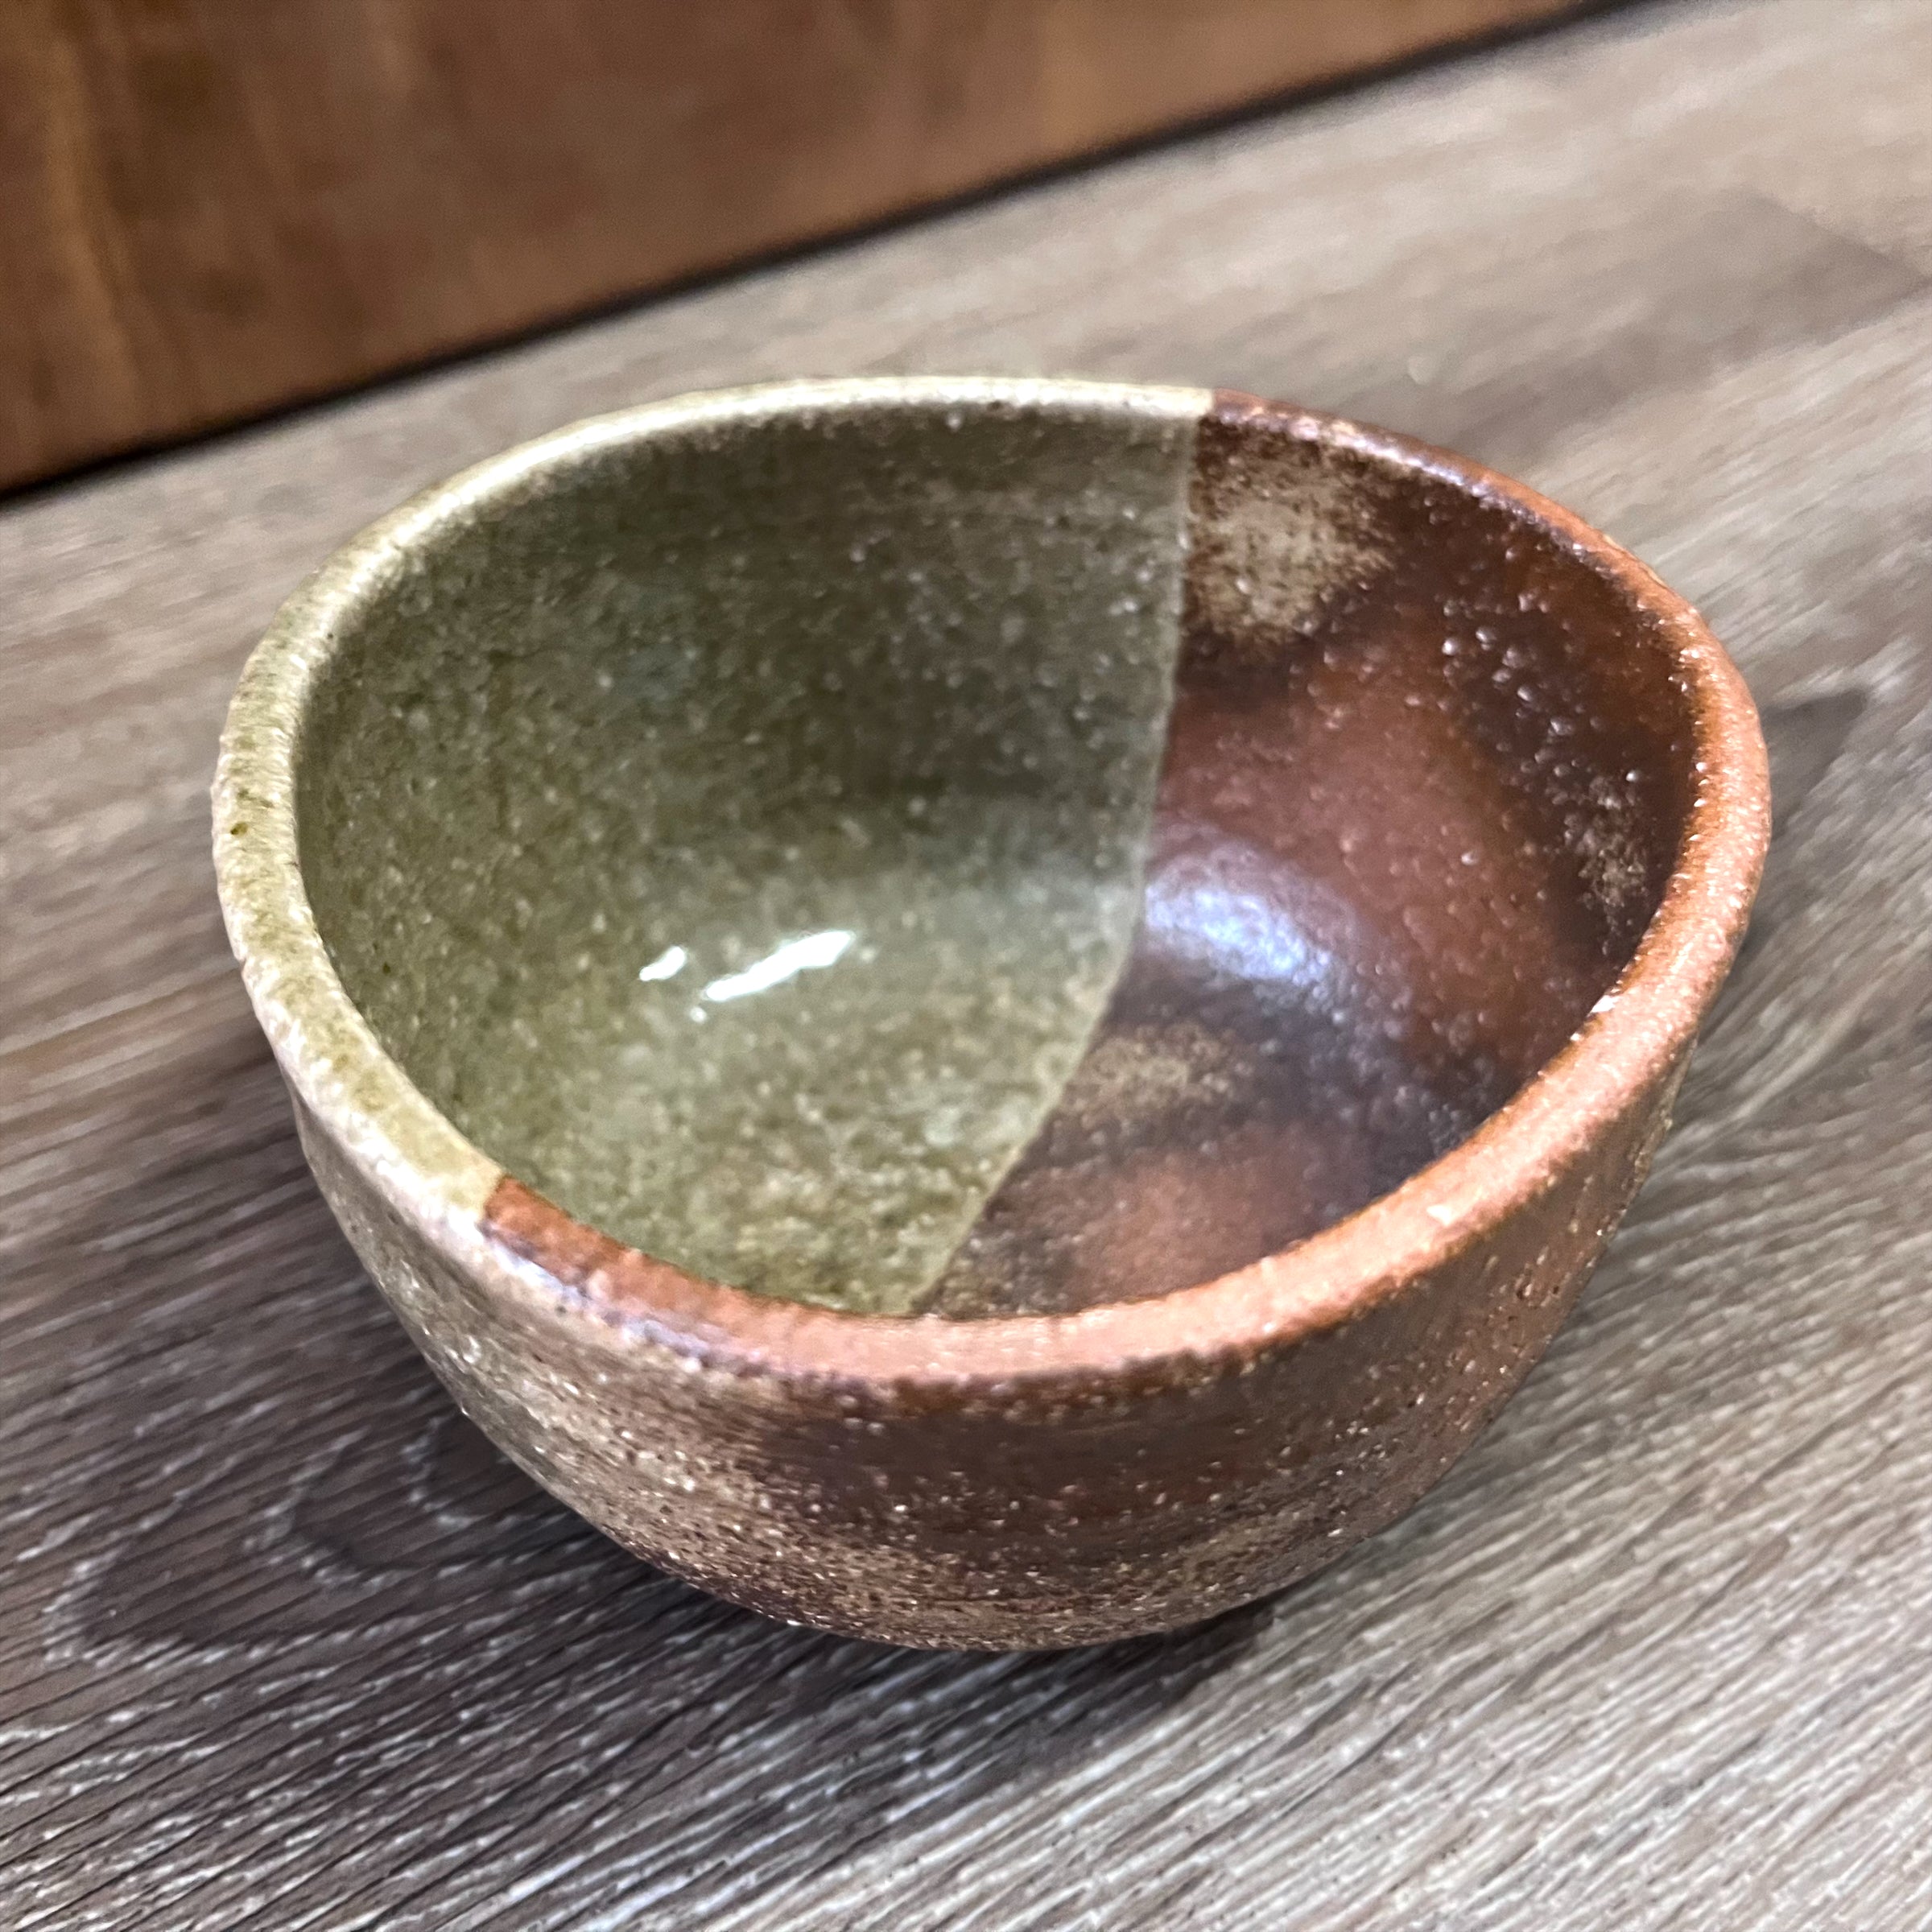 Japanese Handmade Tea Pitcher (fairness cup) - Autumn